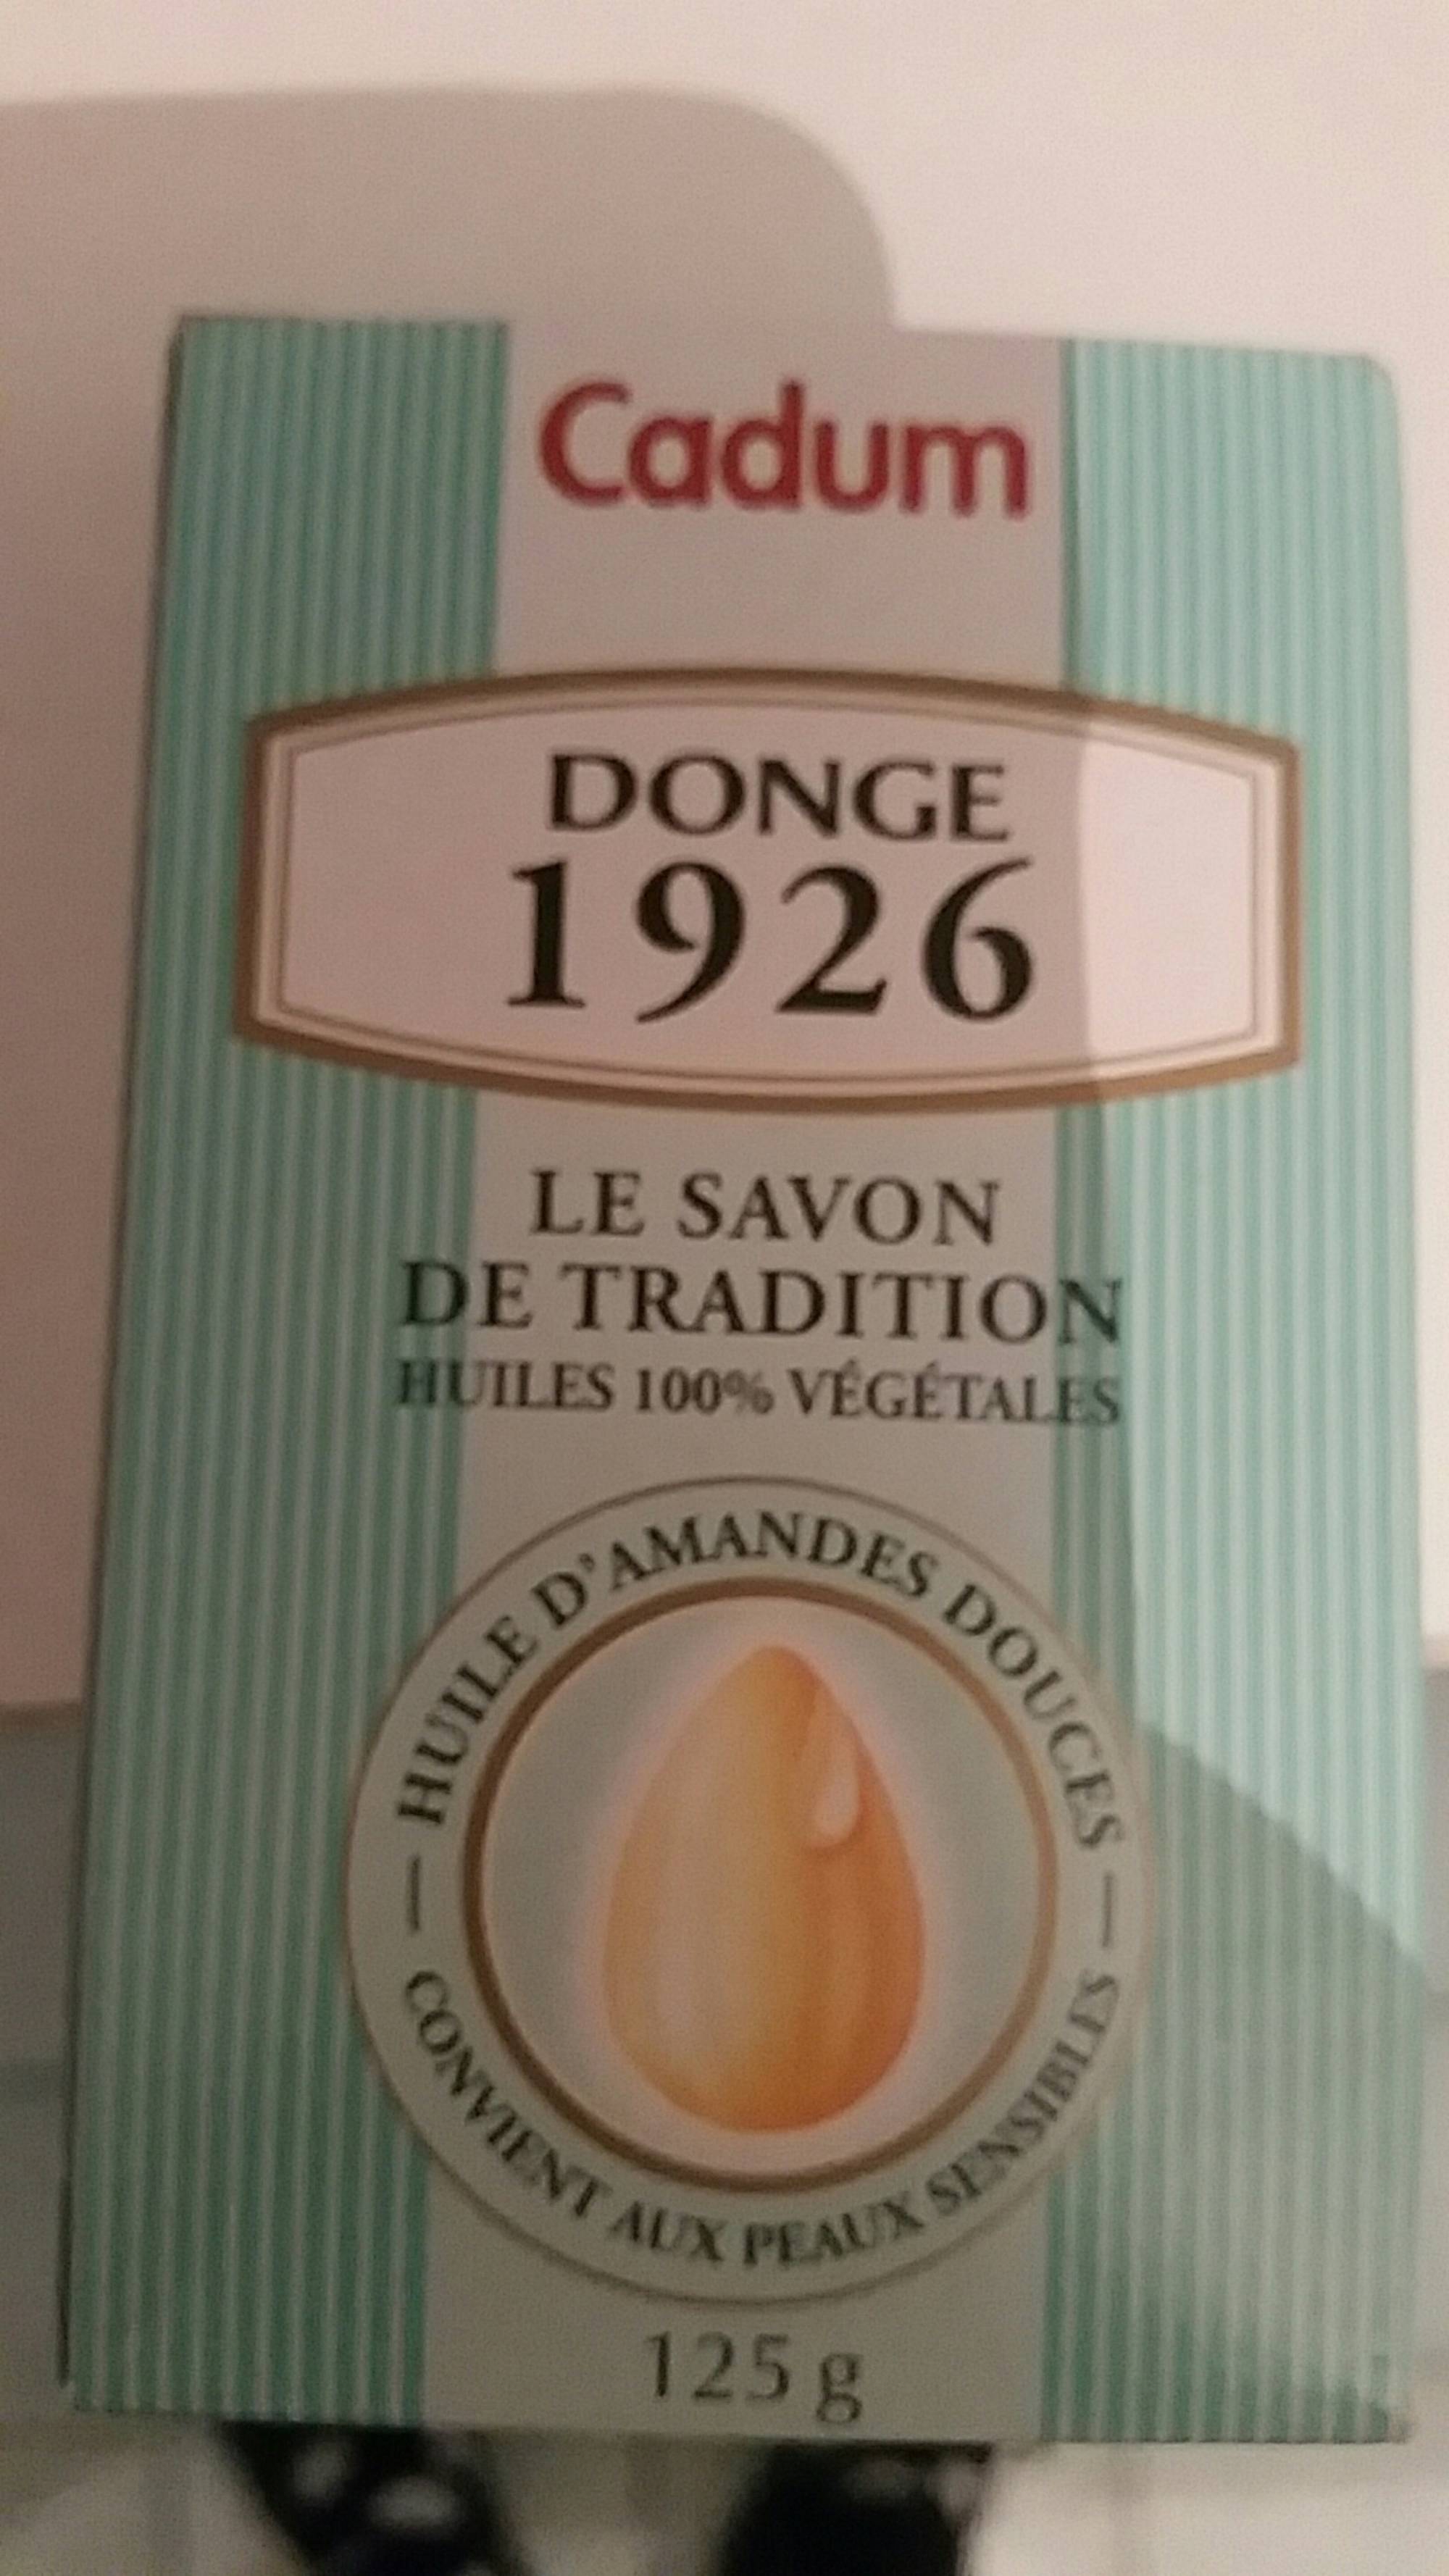 CADUM - Donge 1926 - Le savon de tradition